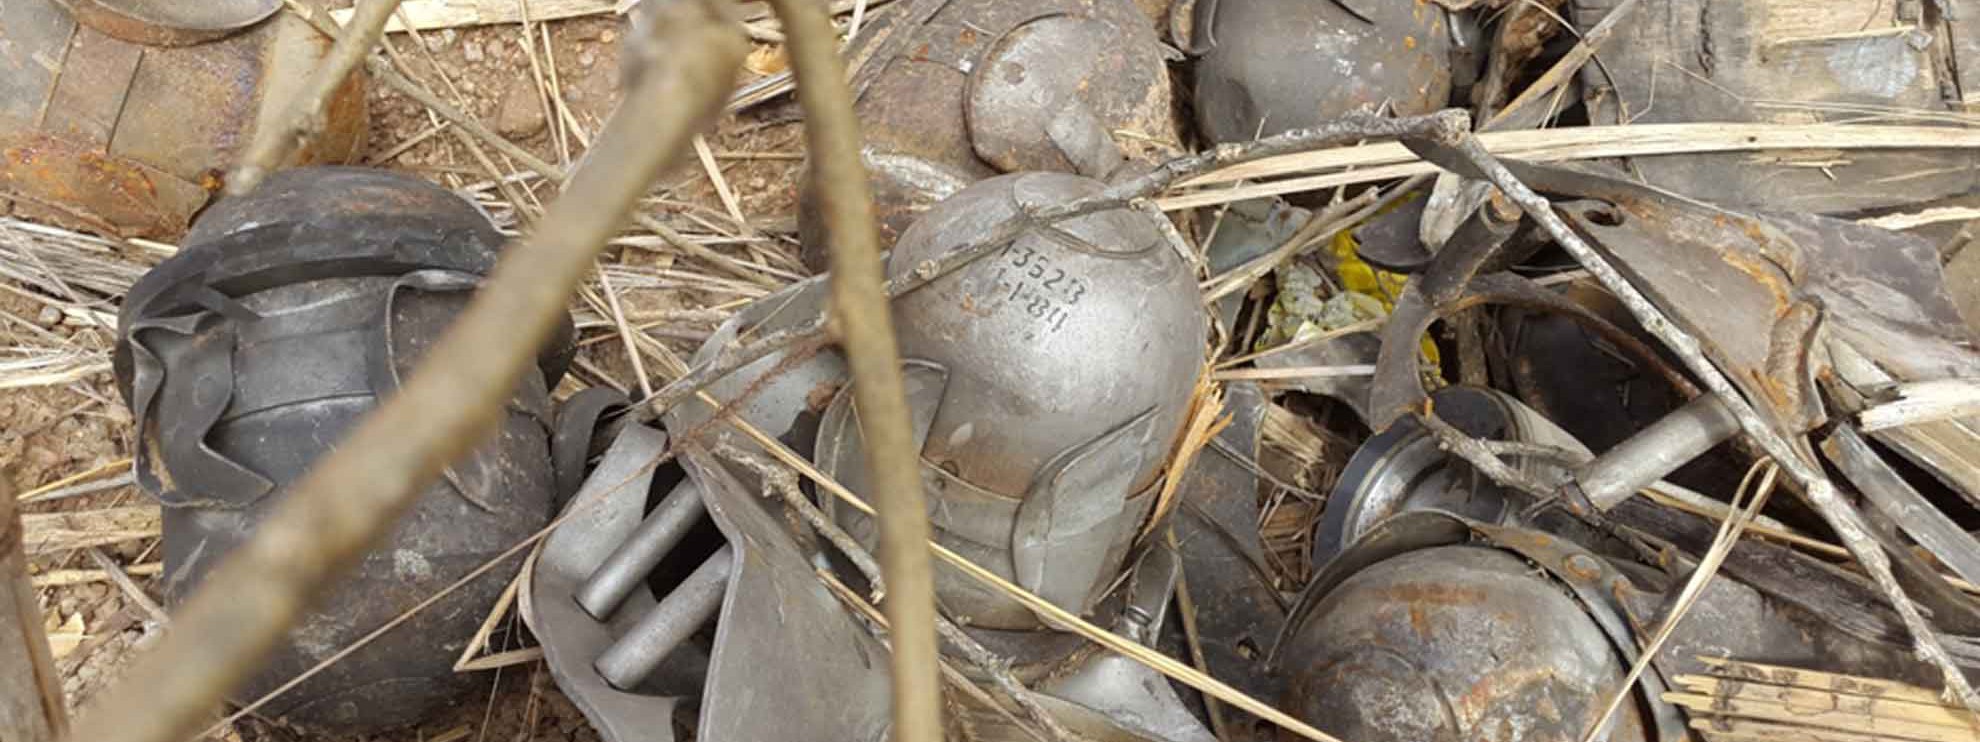 Résidus d'une bombe à fragmentation retrouvés dans une maison du Sud Kordofan, Soudan. Février 2015. © Amnesty International